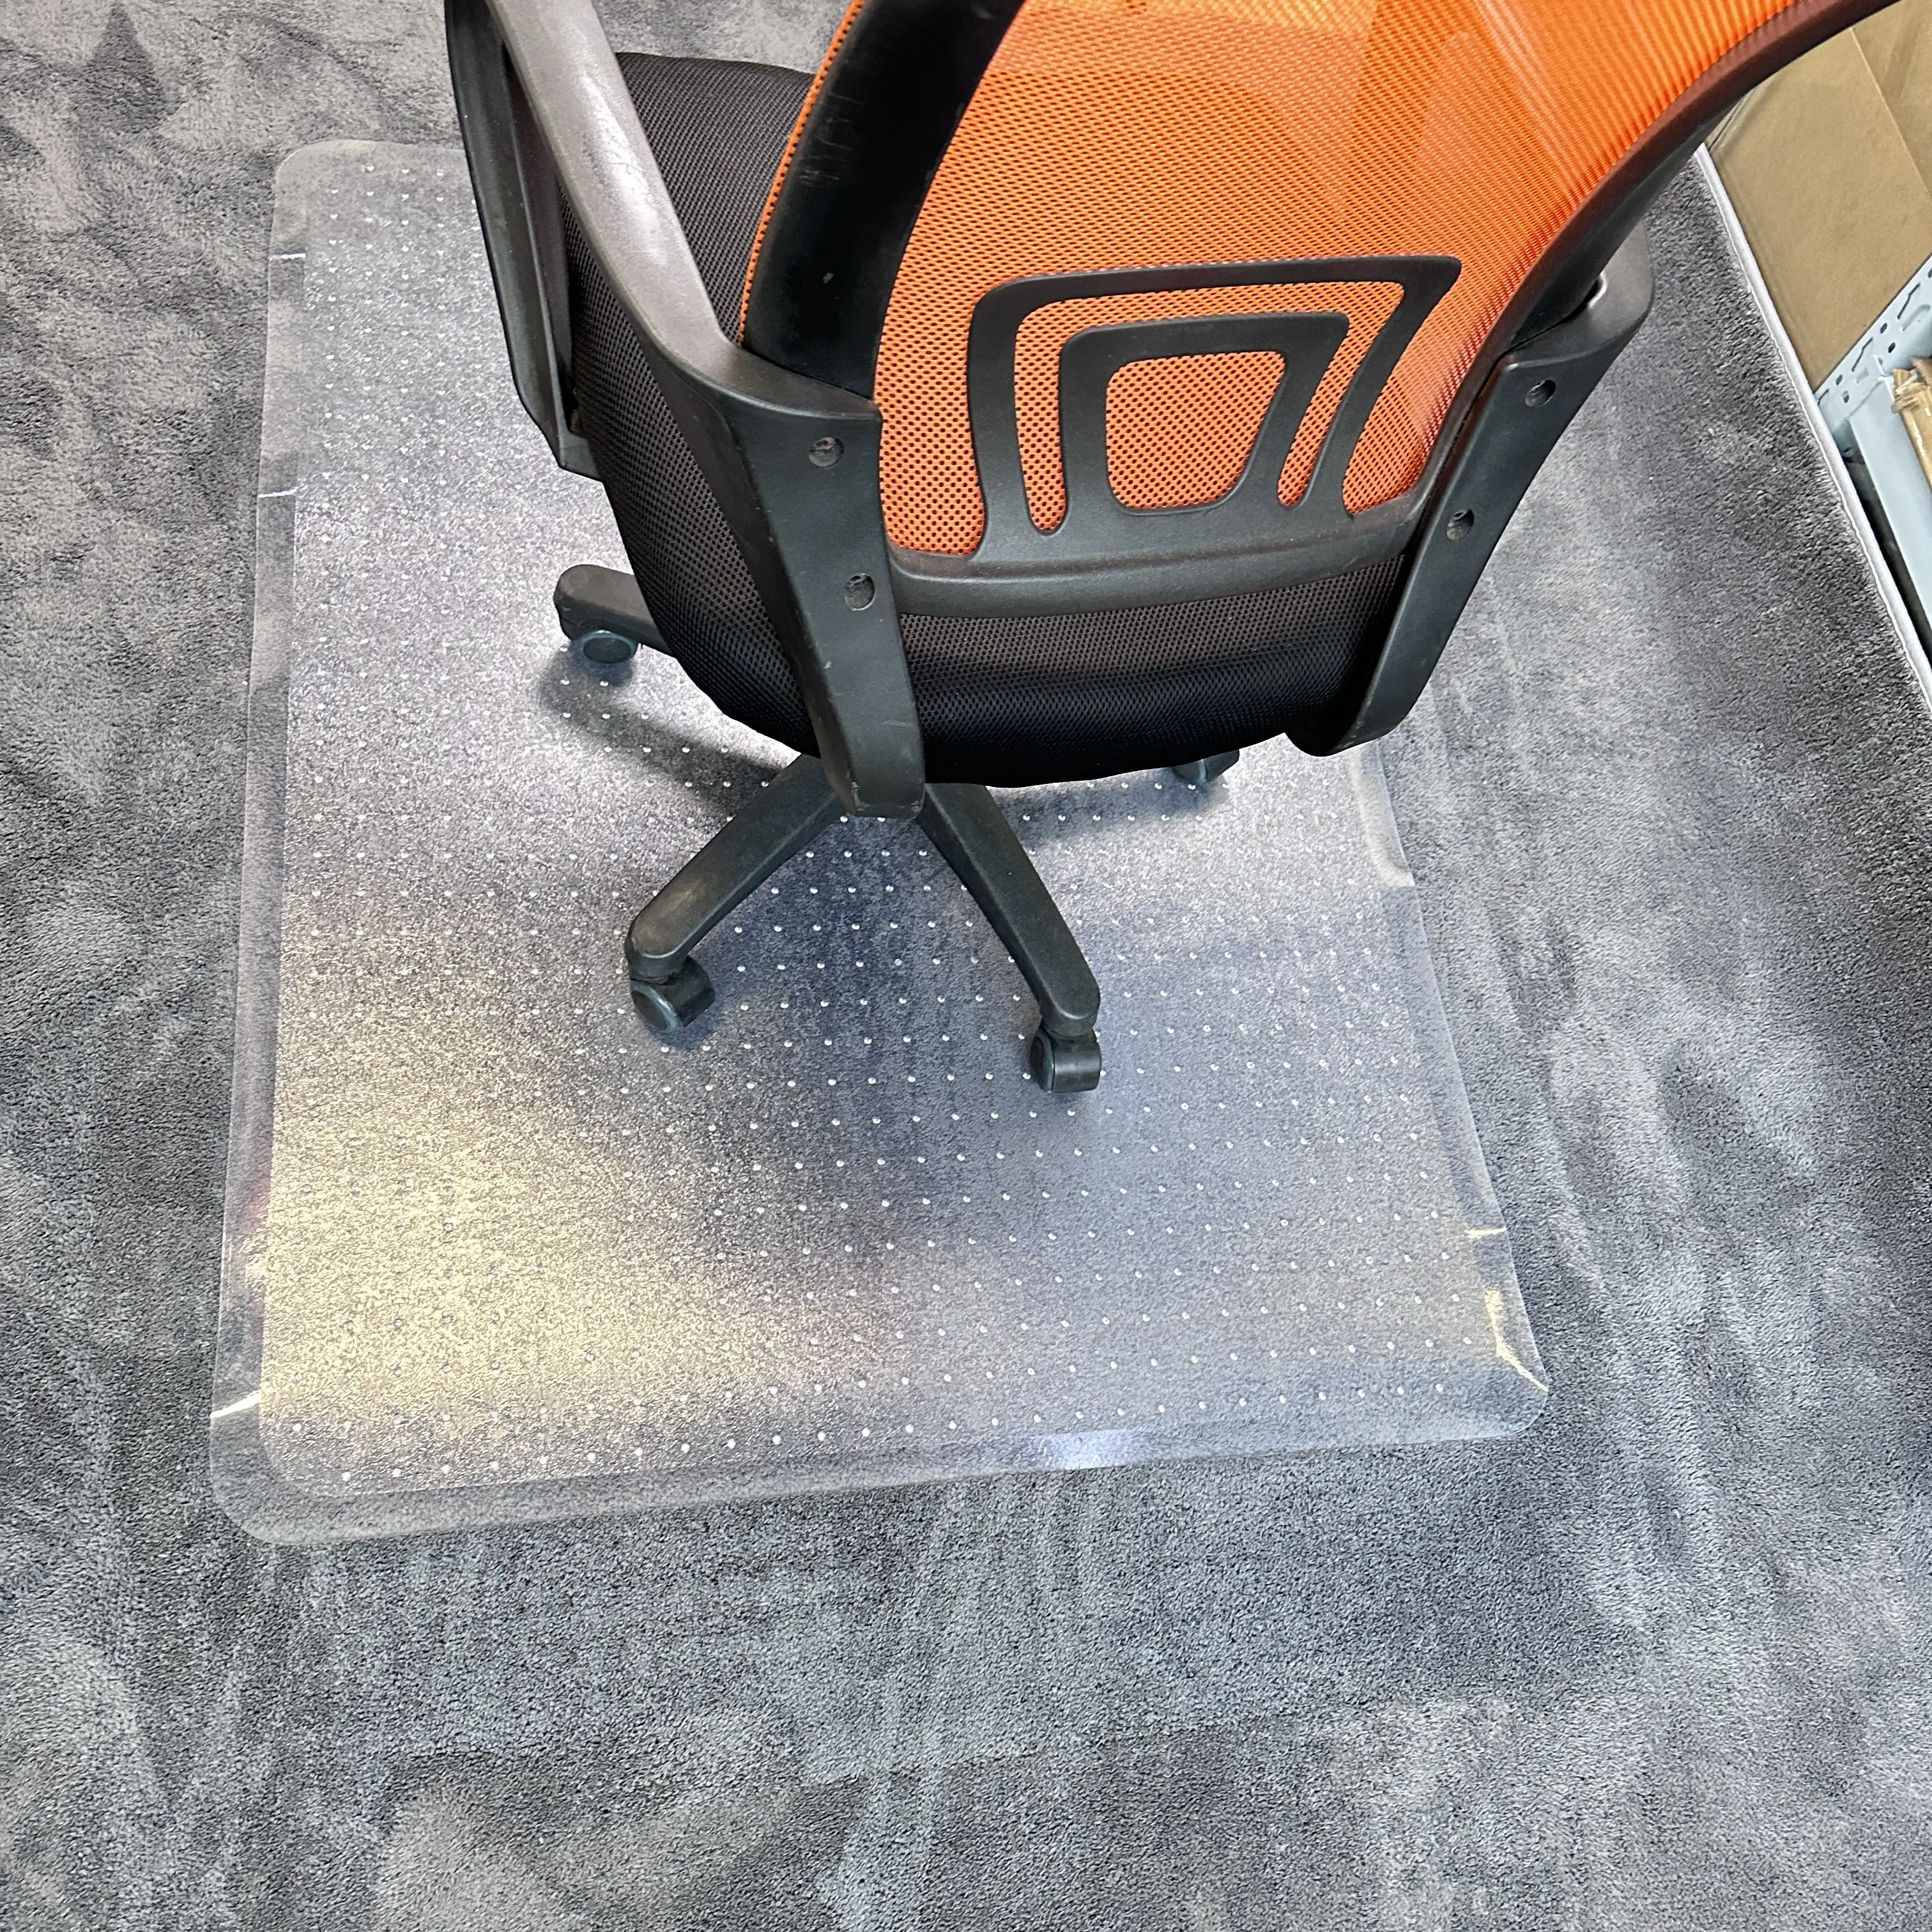 แผ่นปูรองเก้าอี้พลาสติก PVC ขนาด45X53นิ้วทรงสี่เหลี่ยมมีขอบสำหรับป้องกันพรม